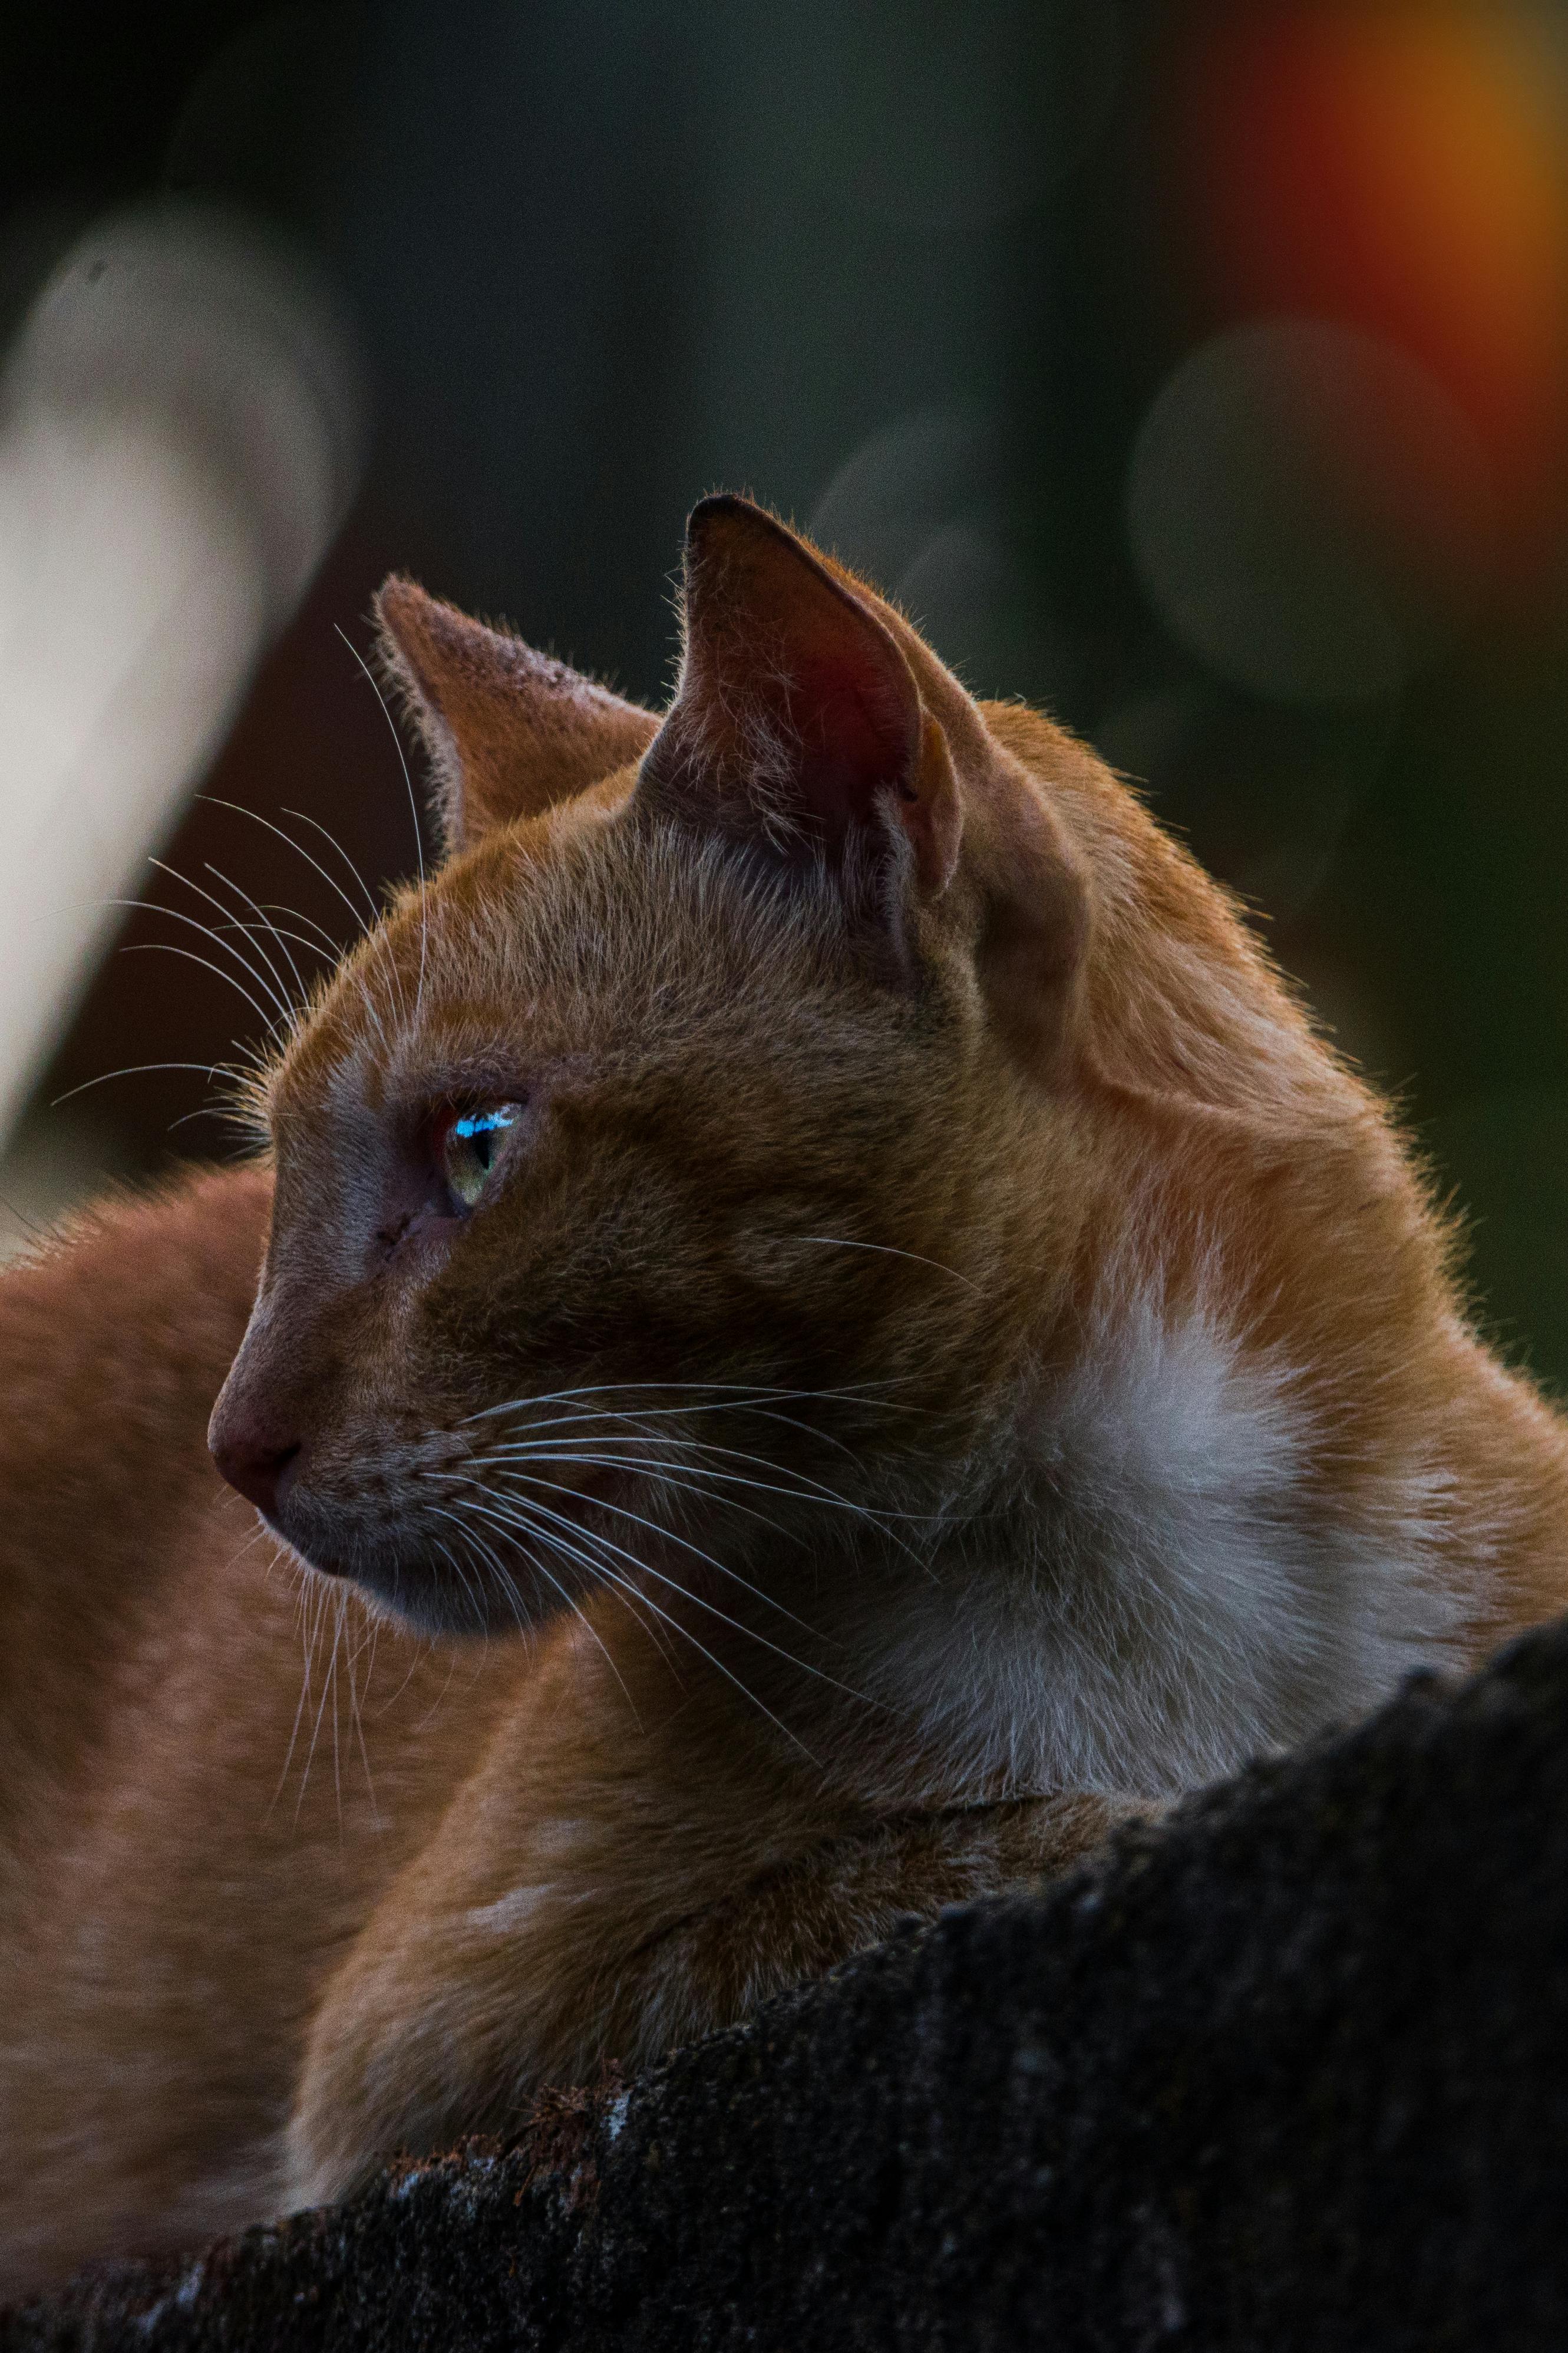 900+ Katzenaugen Bilder und Fotos · Kostenlos Downloaden · Pexels  Stock-Fotos